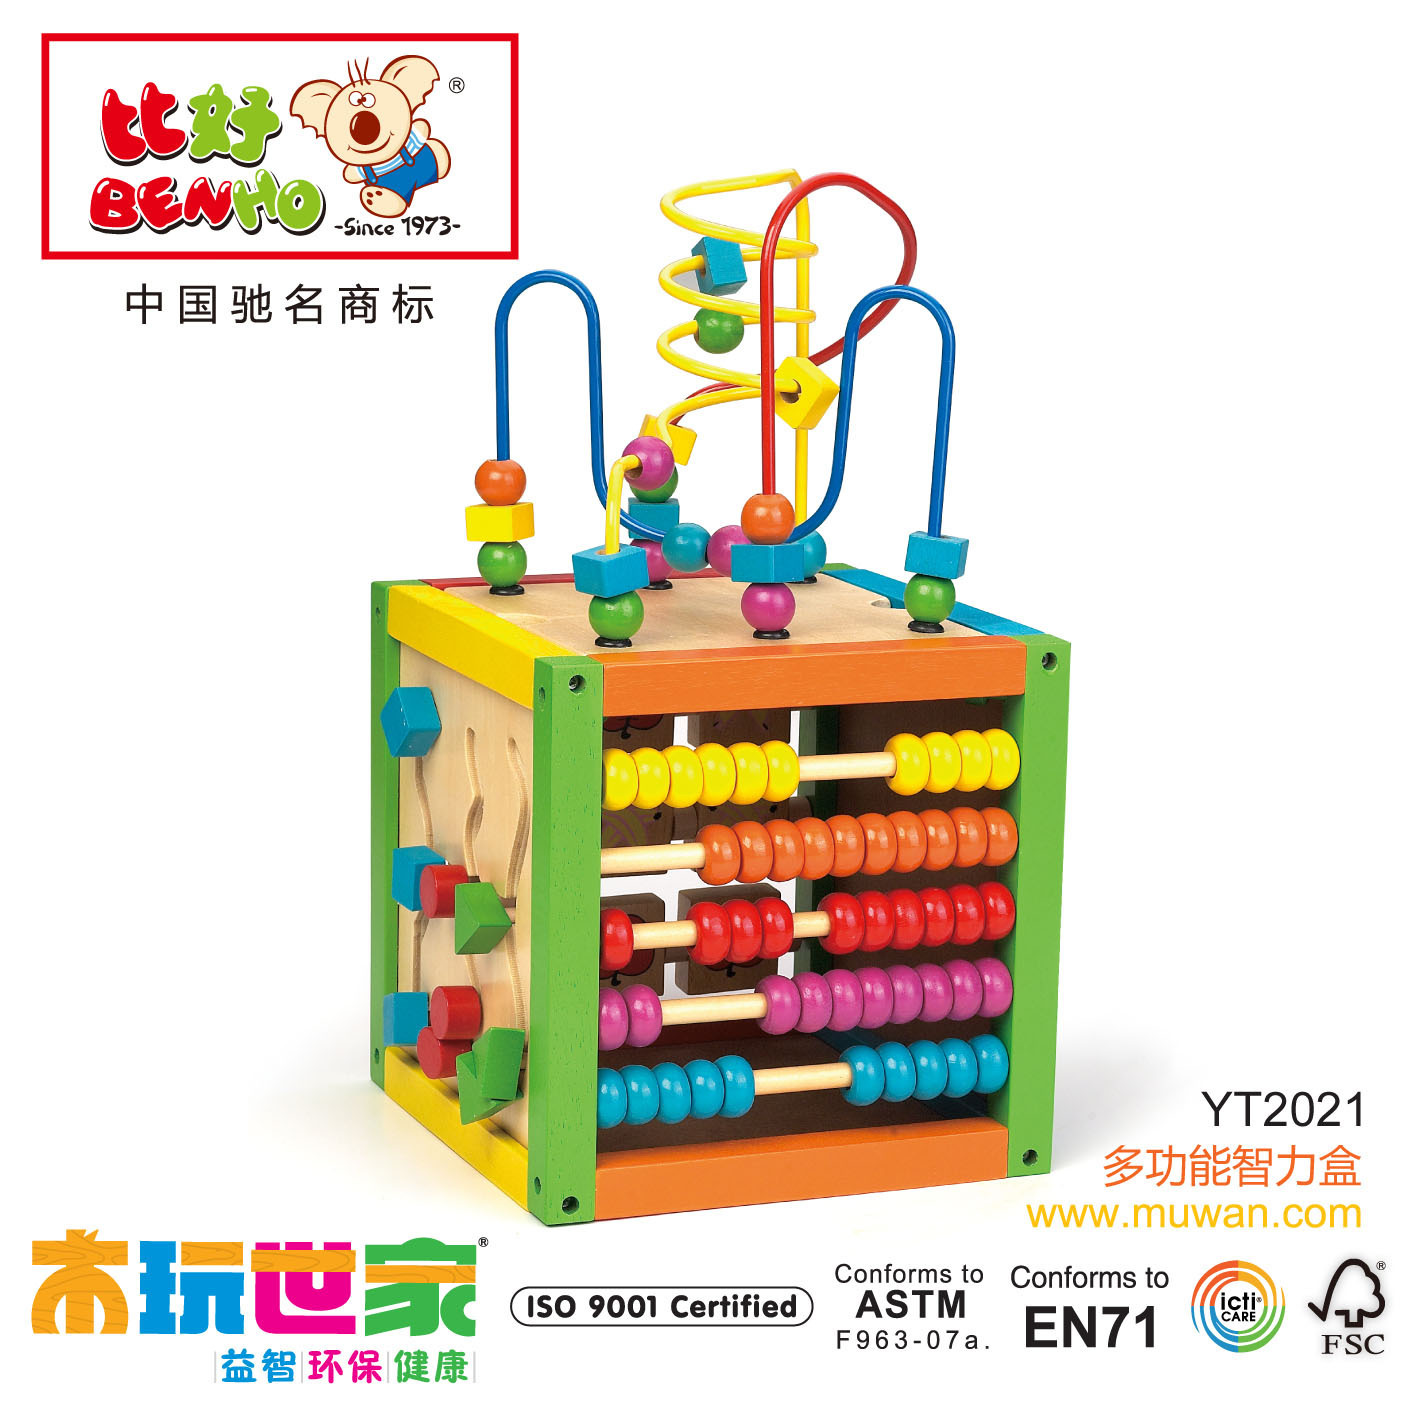 益智玩具 高端木质积木 木玩世家 正品保证 多功能智力盒 YT2021